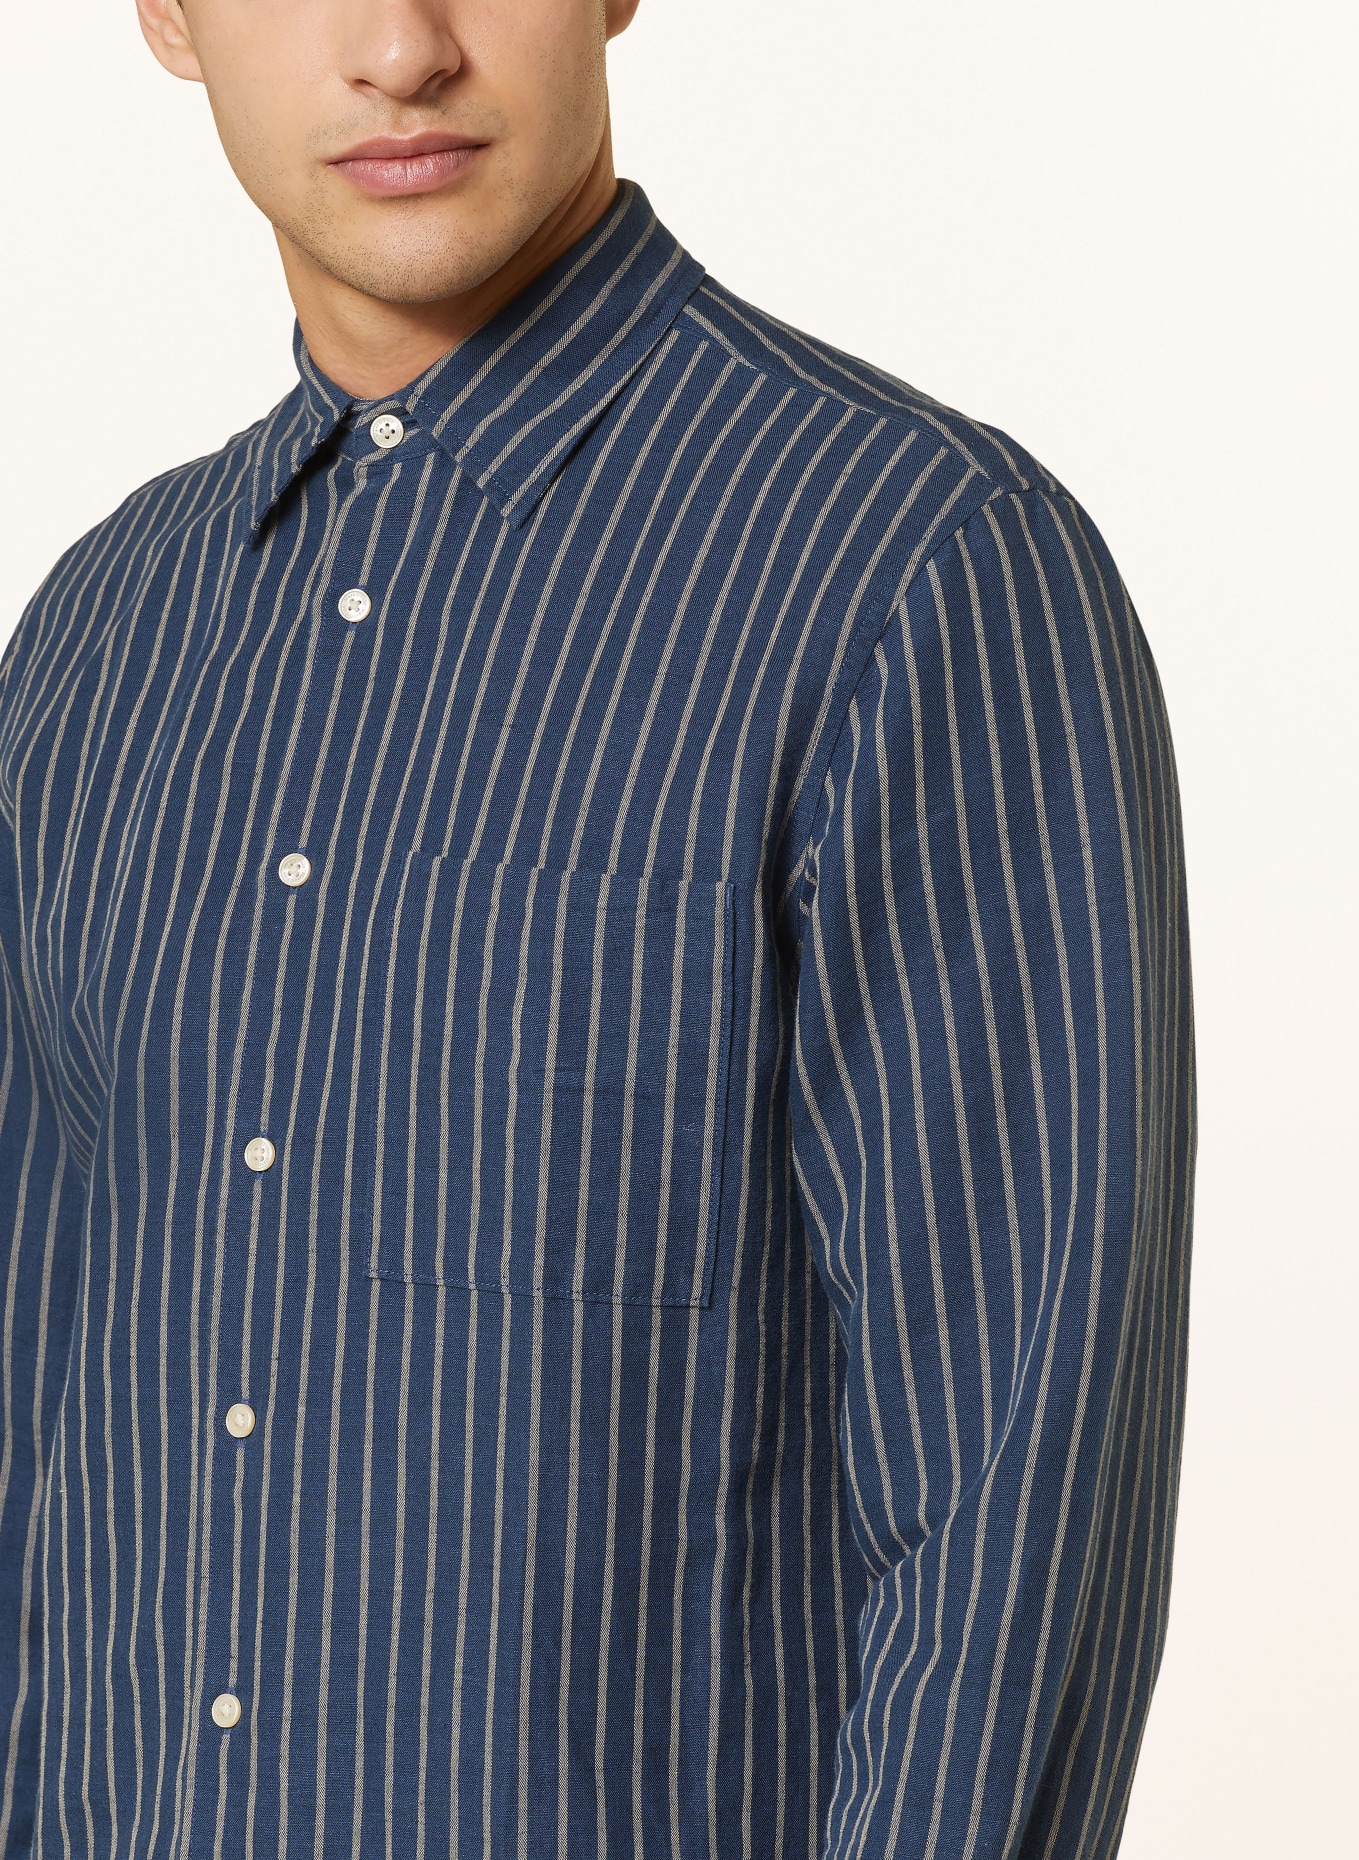 Marc O'Polo Shirt regular fit, Color: DARK BLUE/ CREAM (Image 4)